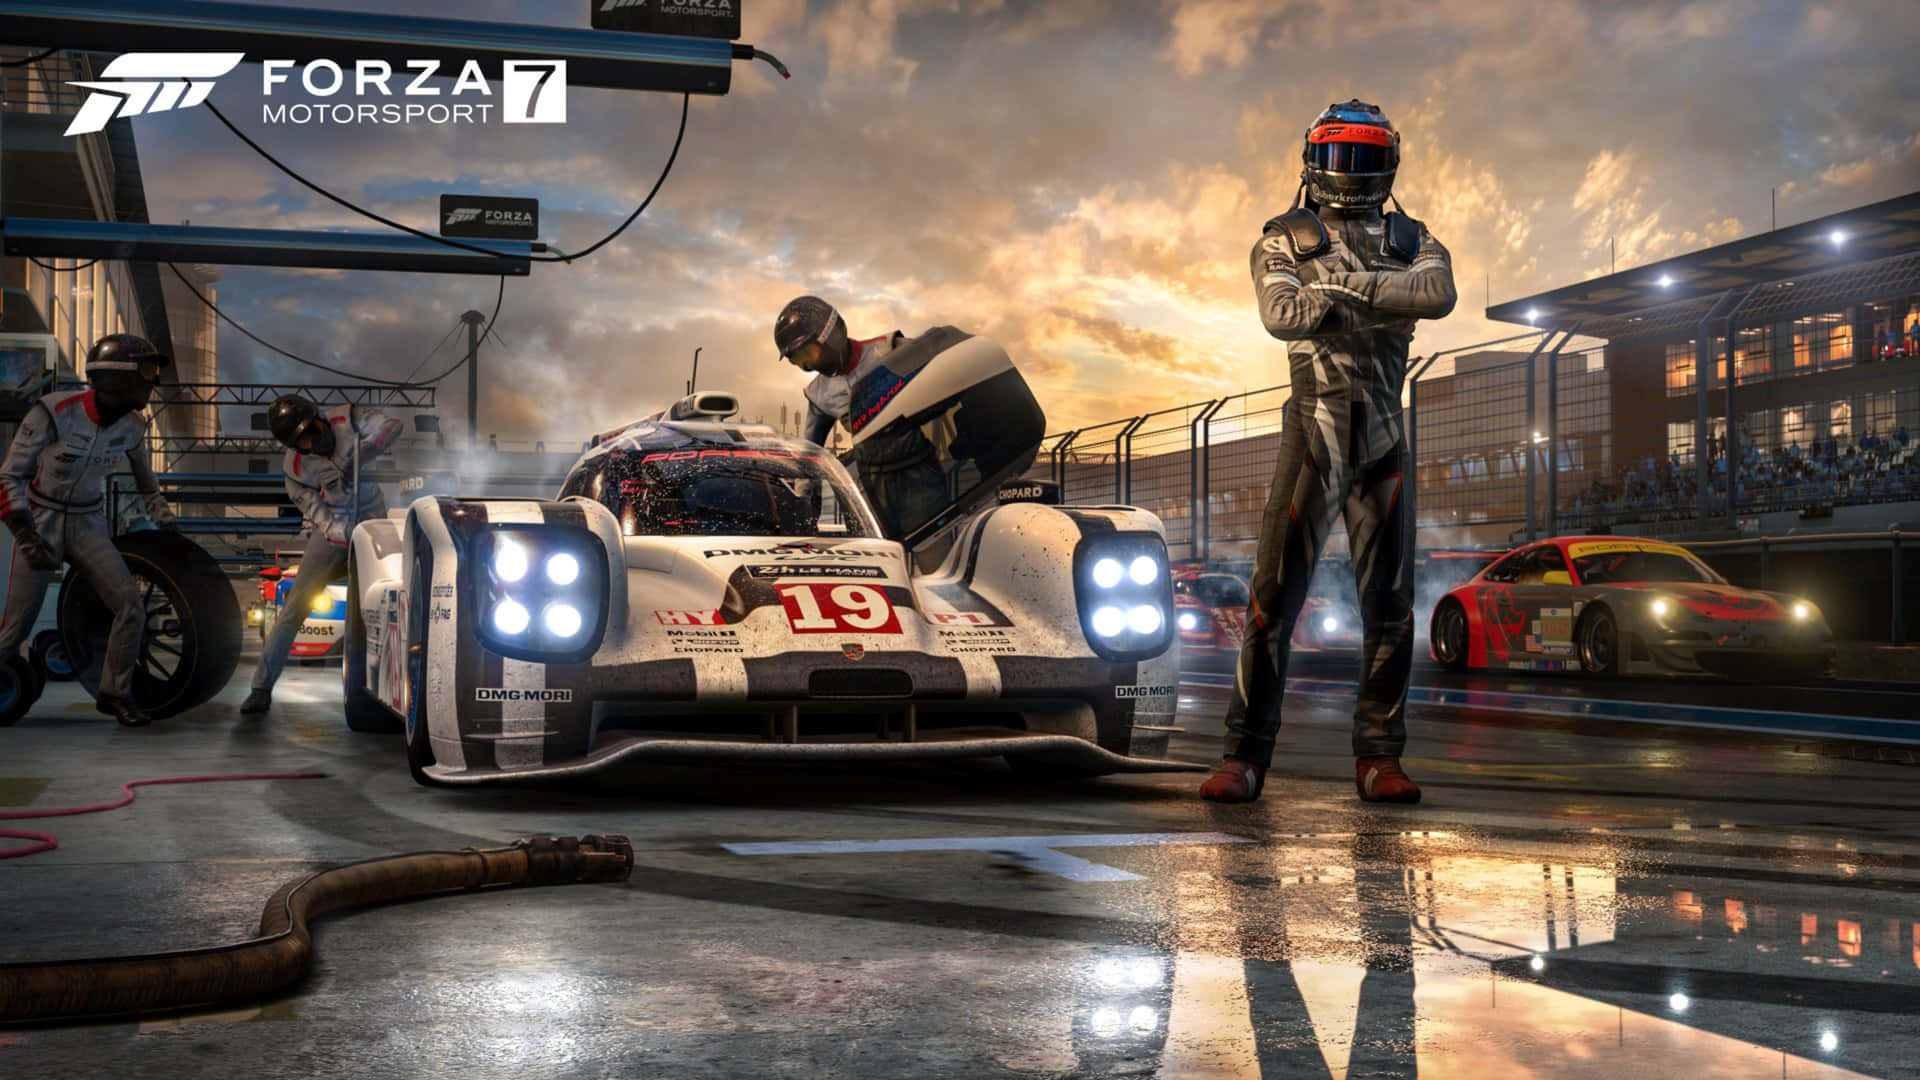 Sfondodel Personale Della Pit Stop Di Forza Motorsport 7 In 4k